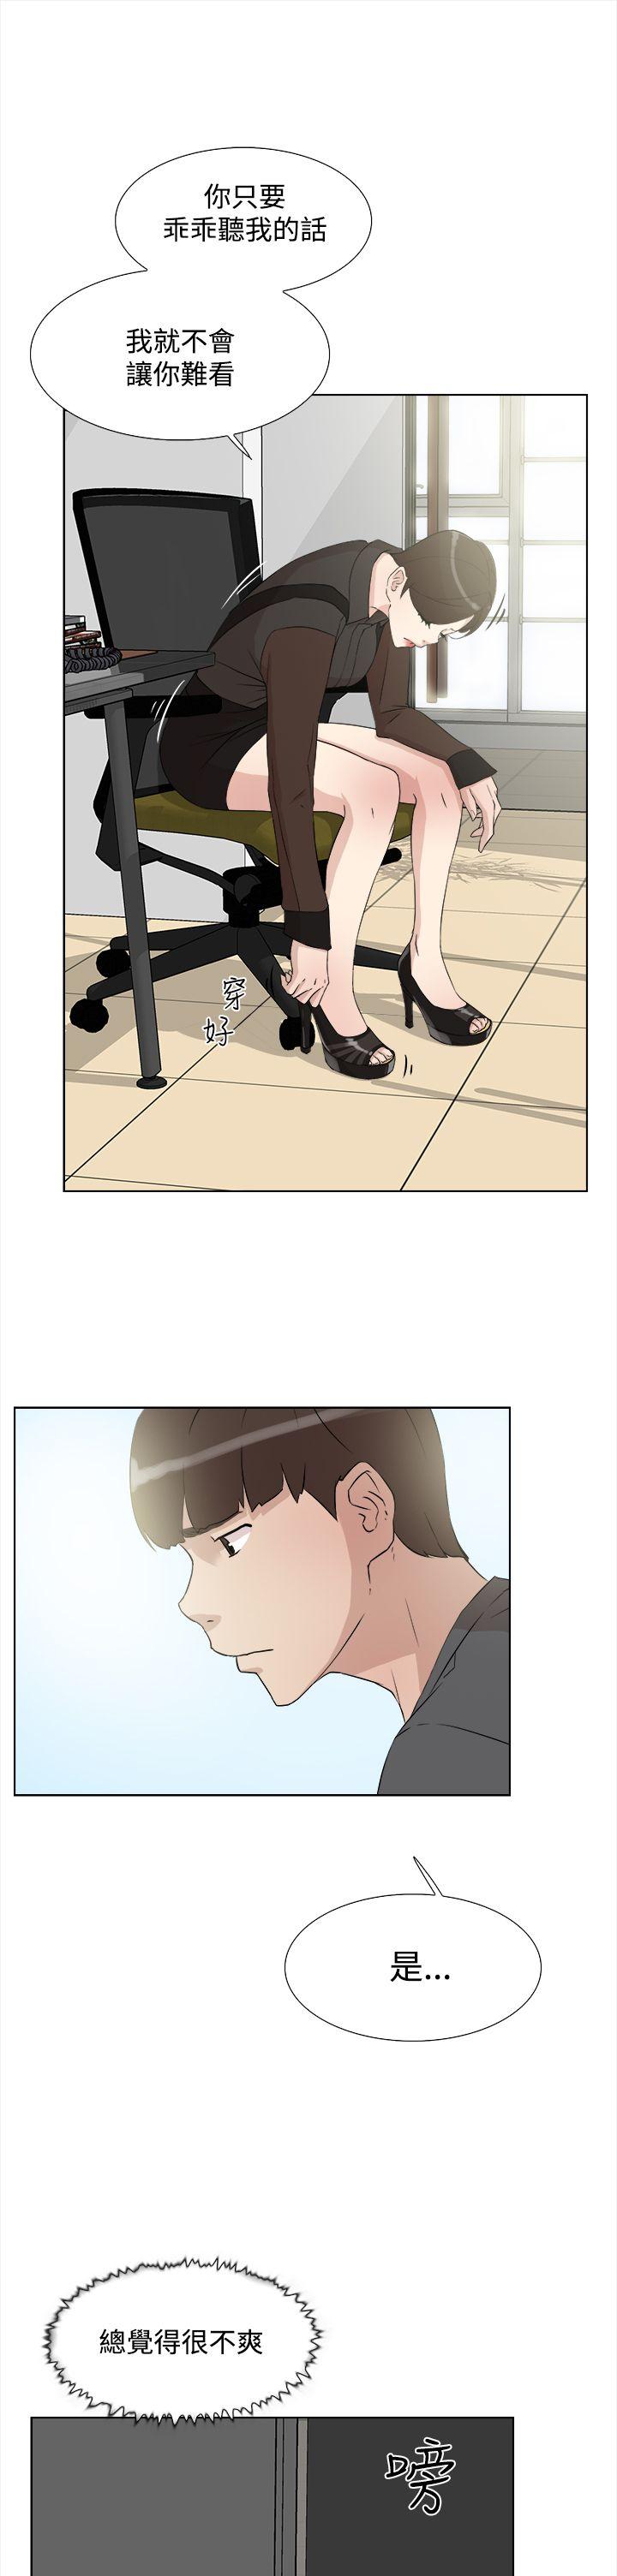 韩国污漫画 她的高跟鞋(無刪減) 第12话 25